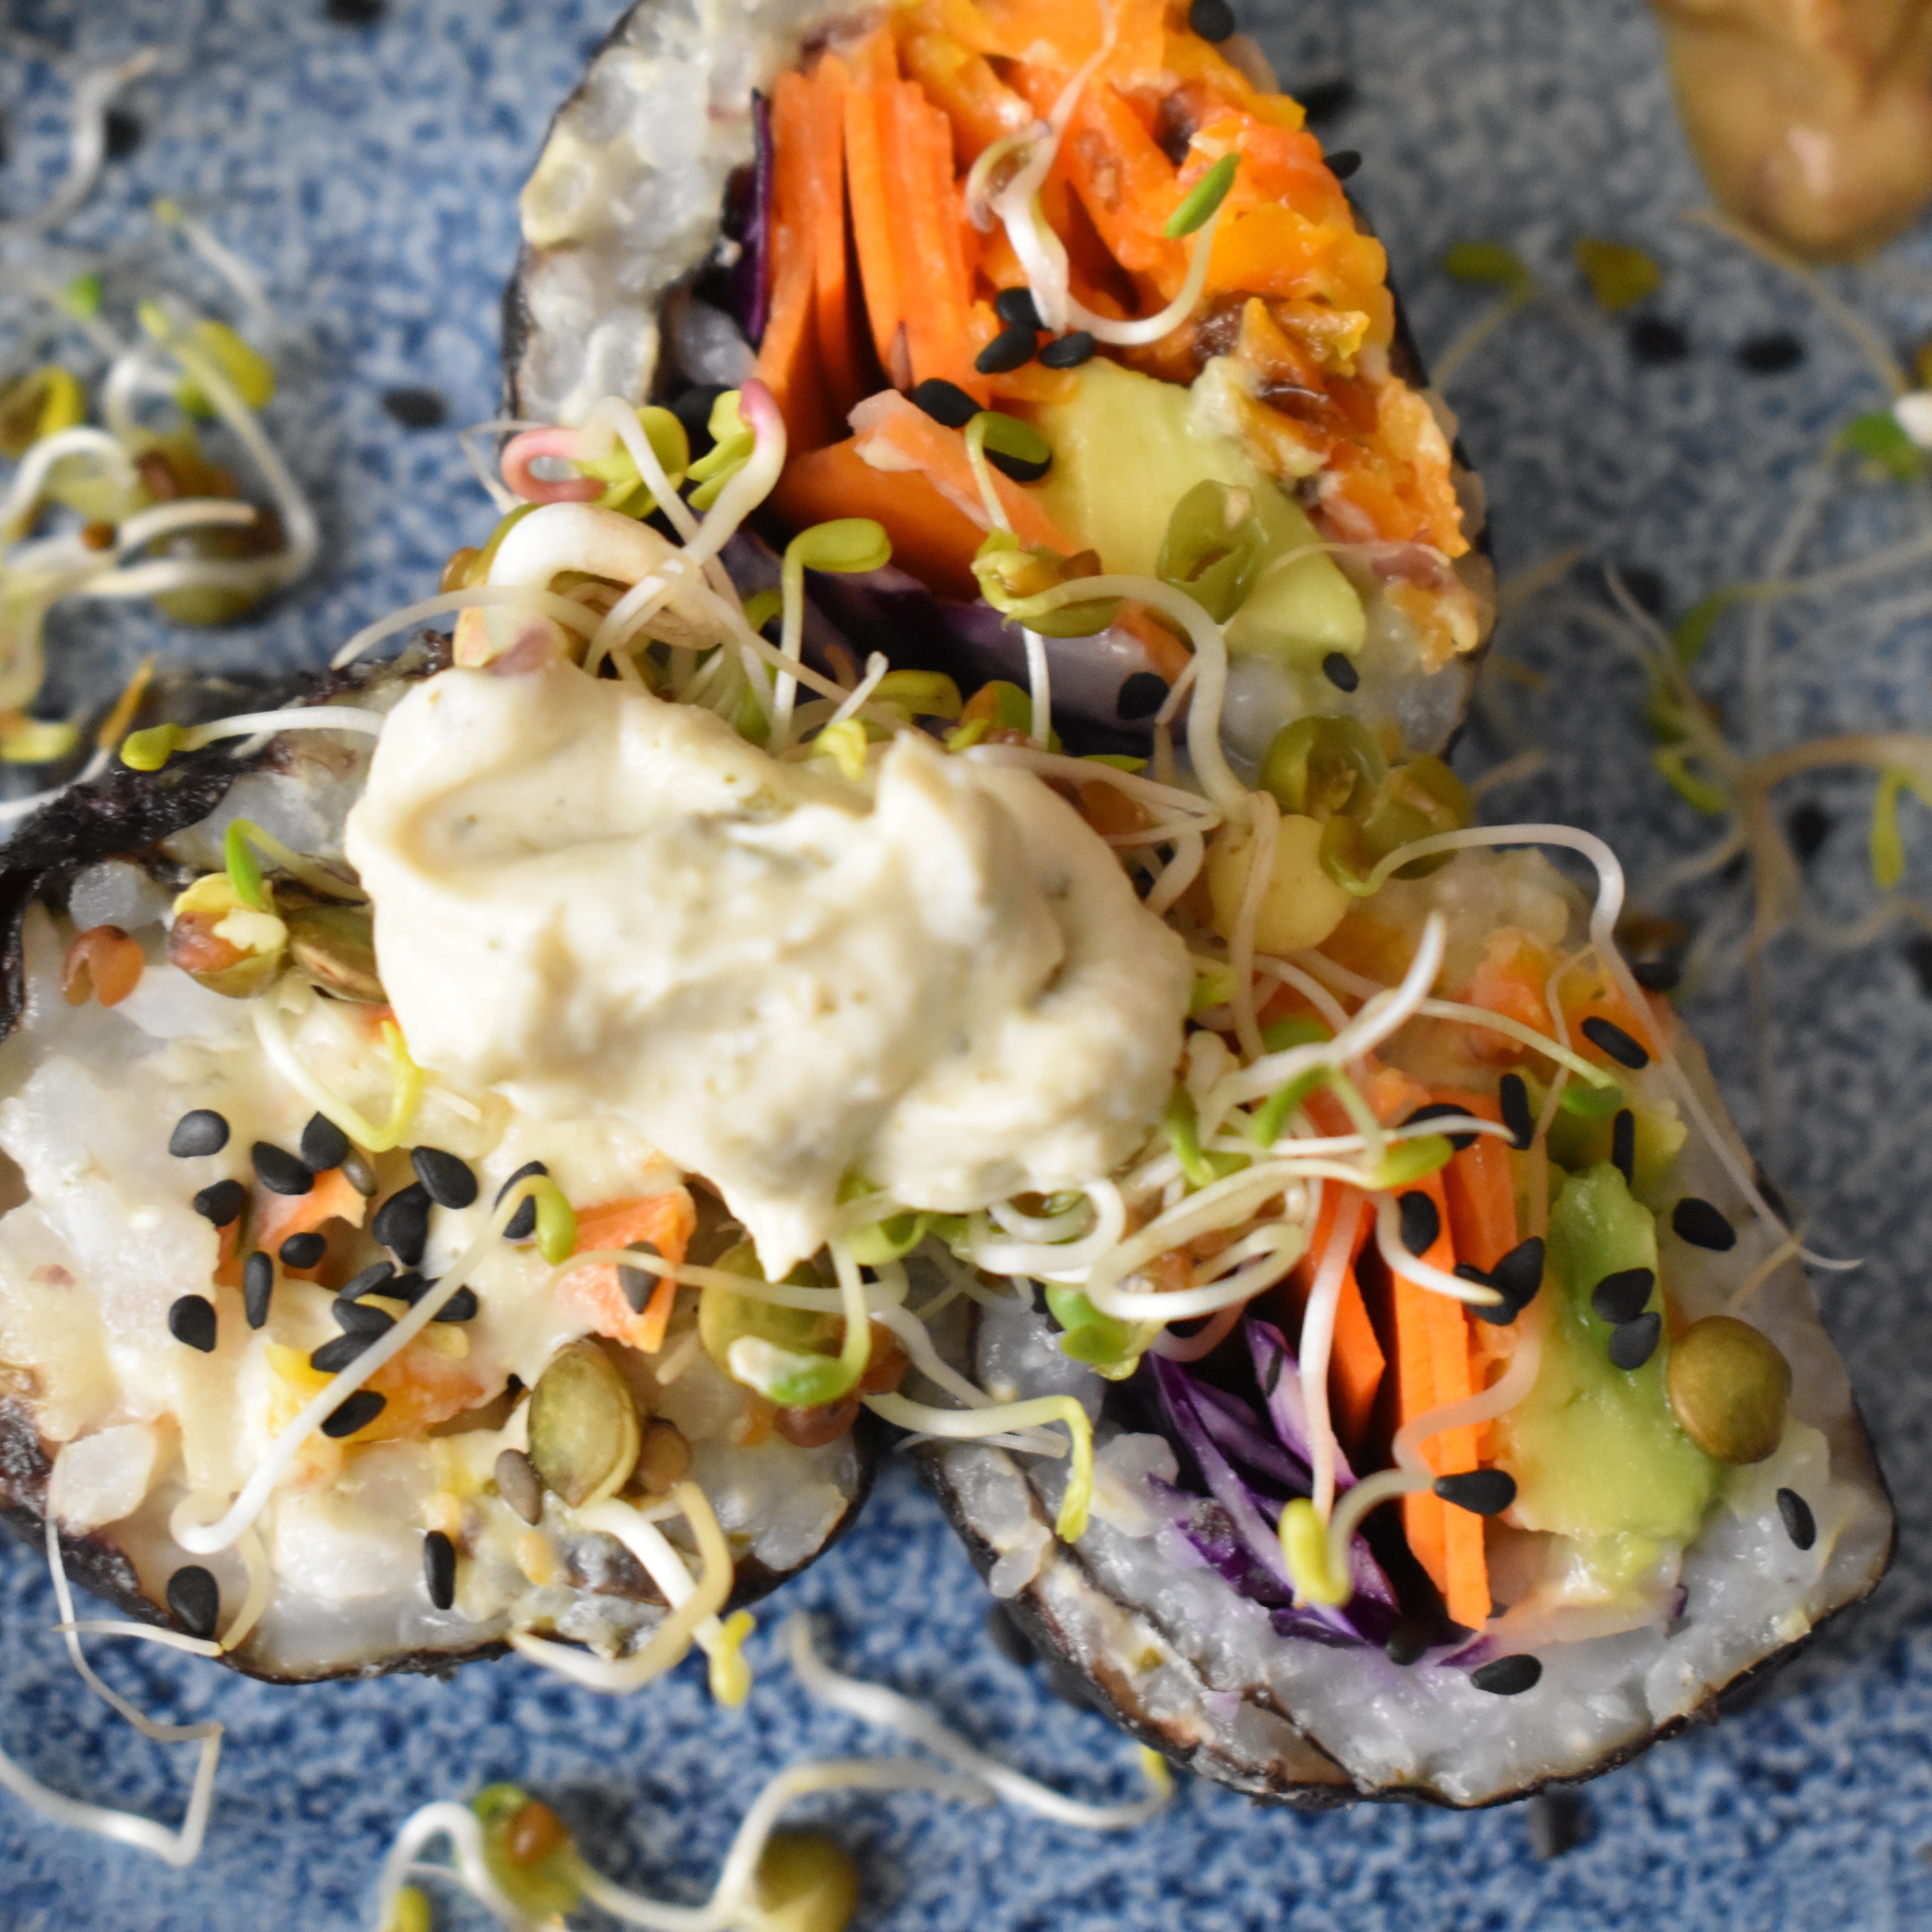 Sushi in Stücke schneiden und mit Sesam und Sprossen garnieren… Mit Sojasauce und Erdnussauce servieren.💚